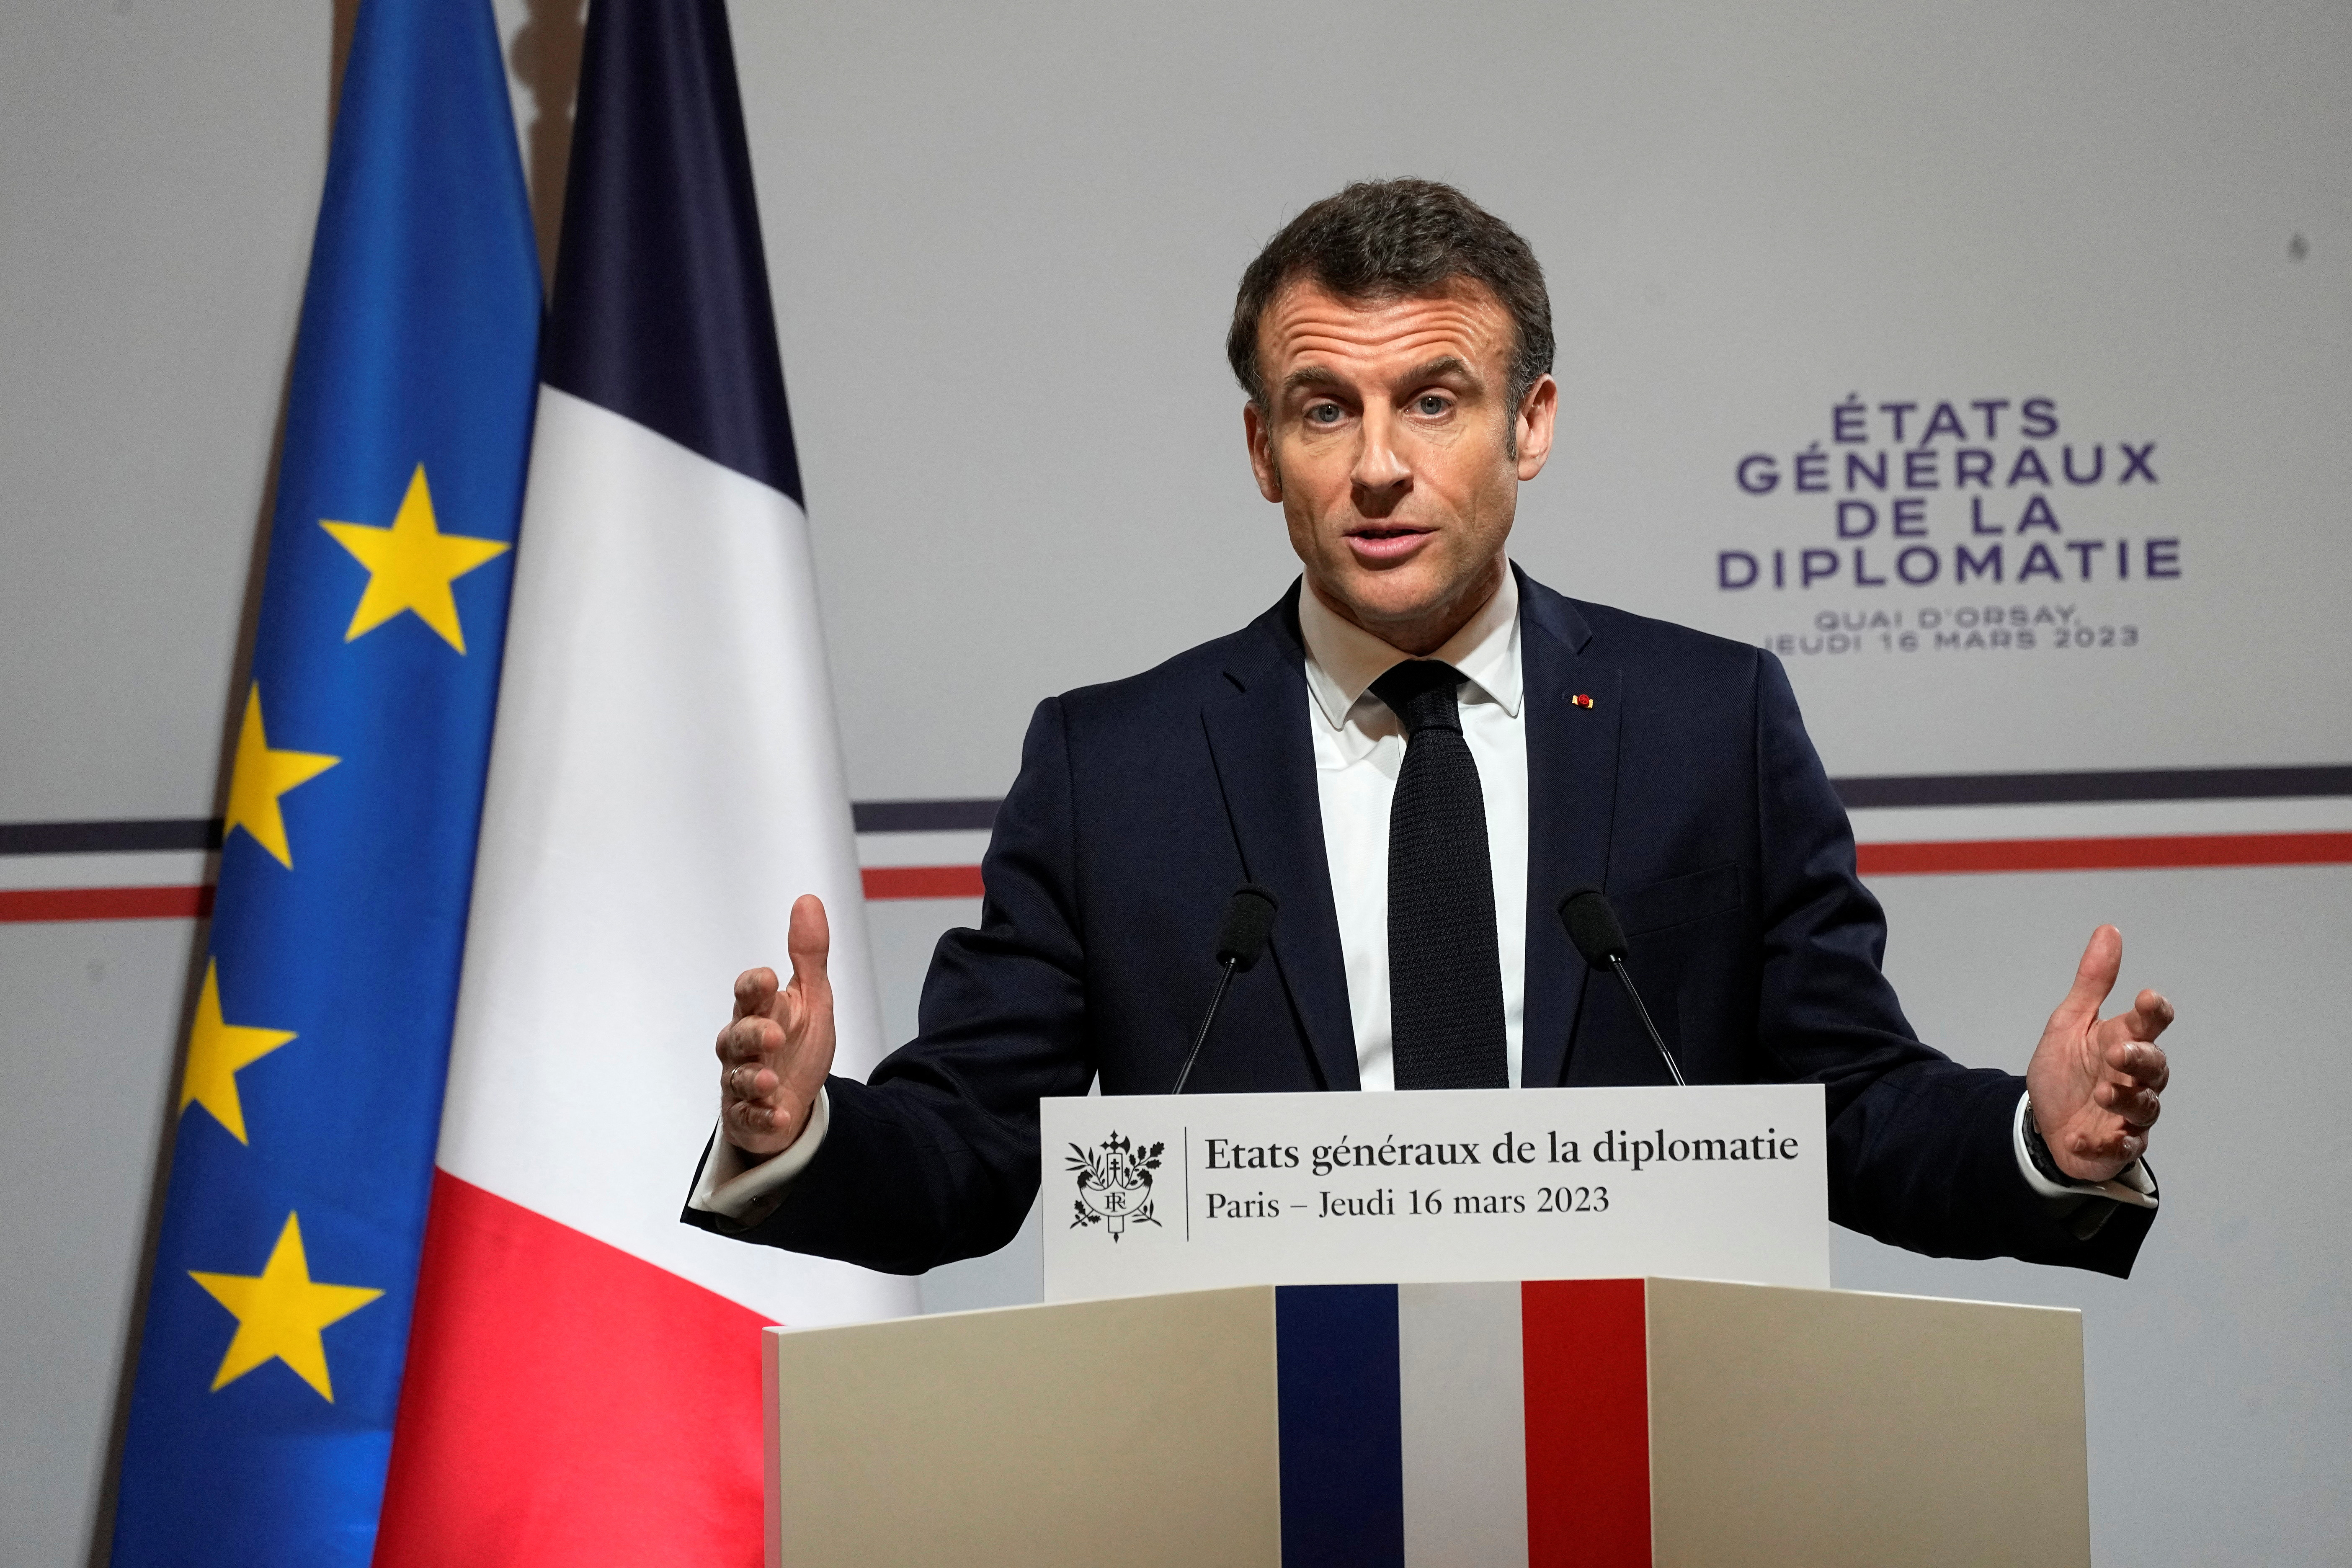 Tras otra noche de protestas contra la reforma de pensiones, Emmanuel Macron busca calmar a los franceses con una entrevista en televisión